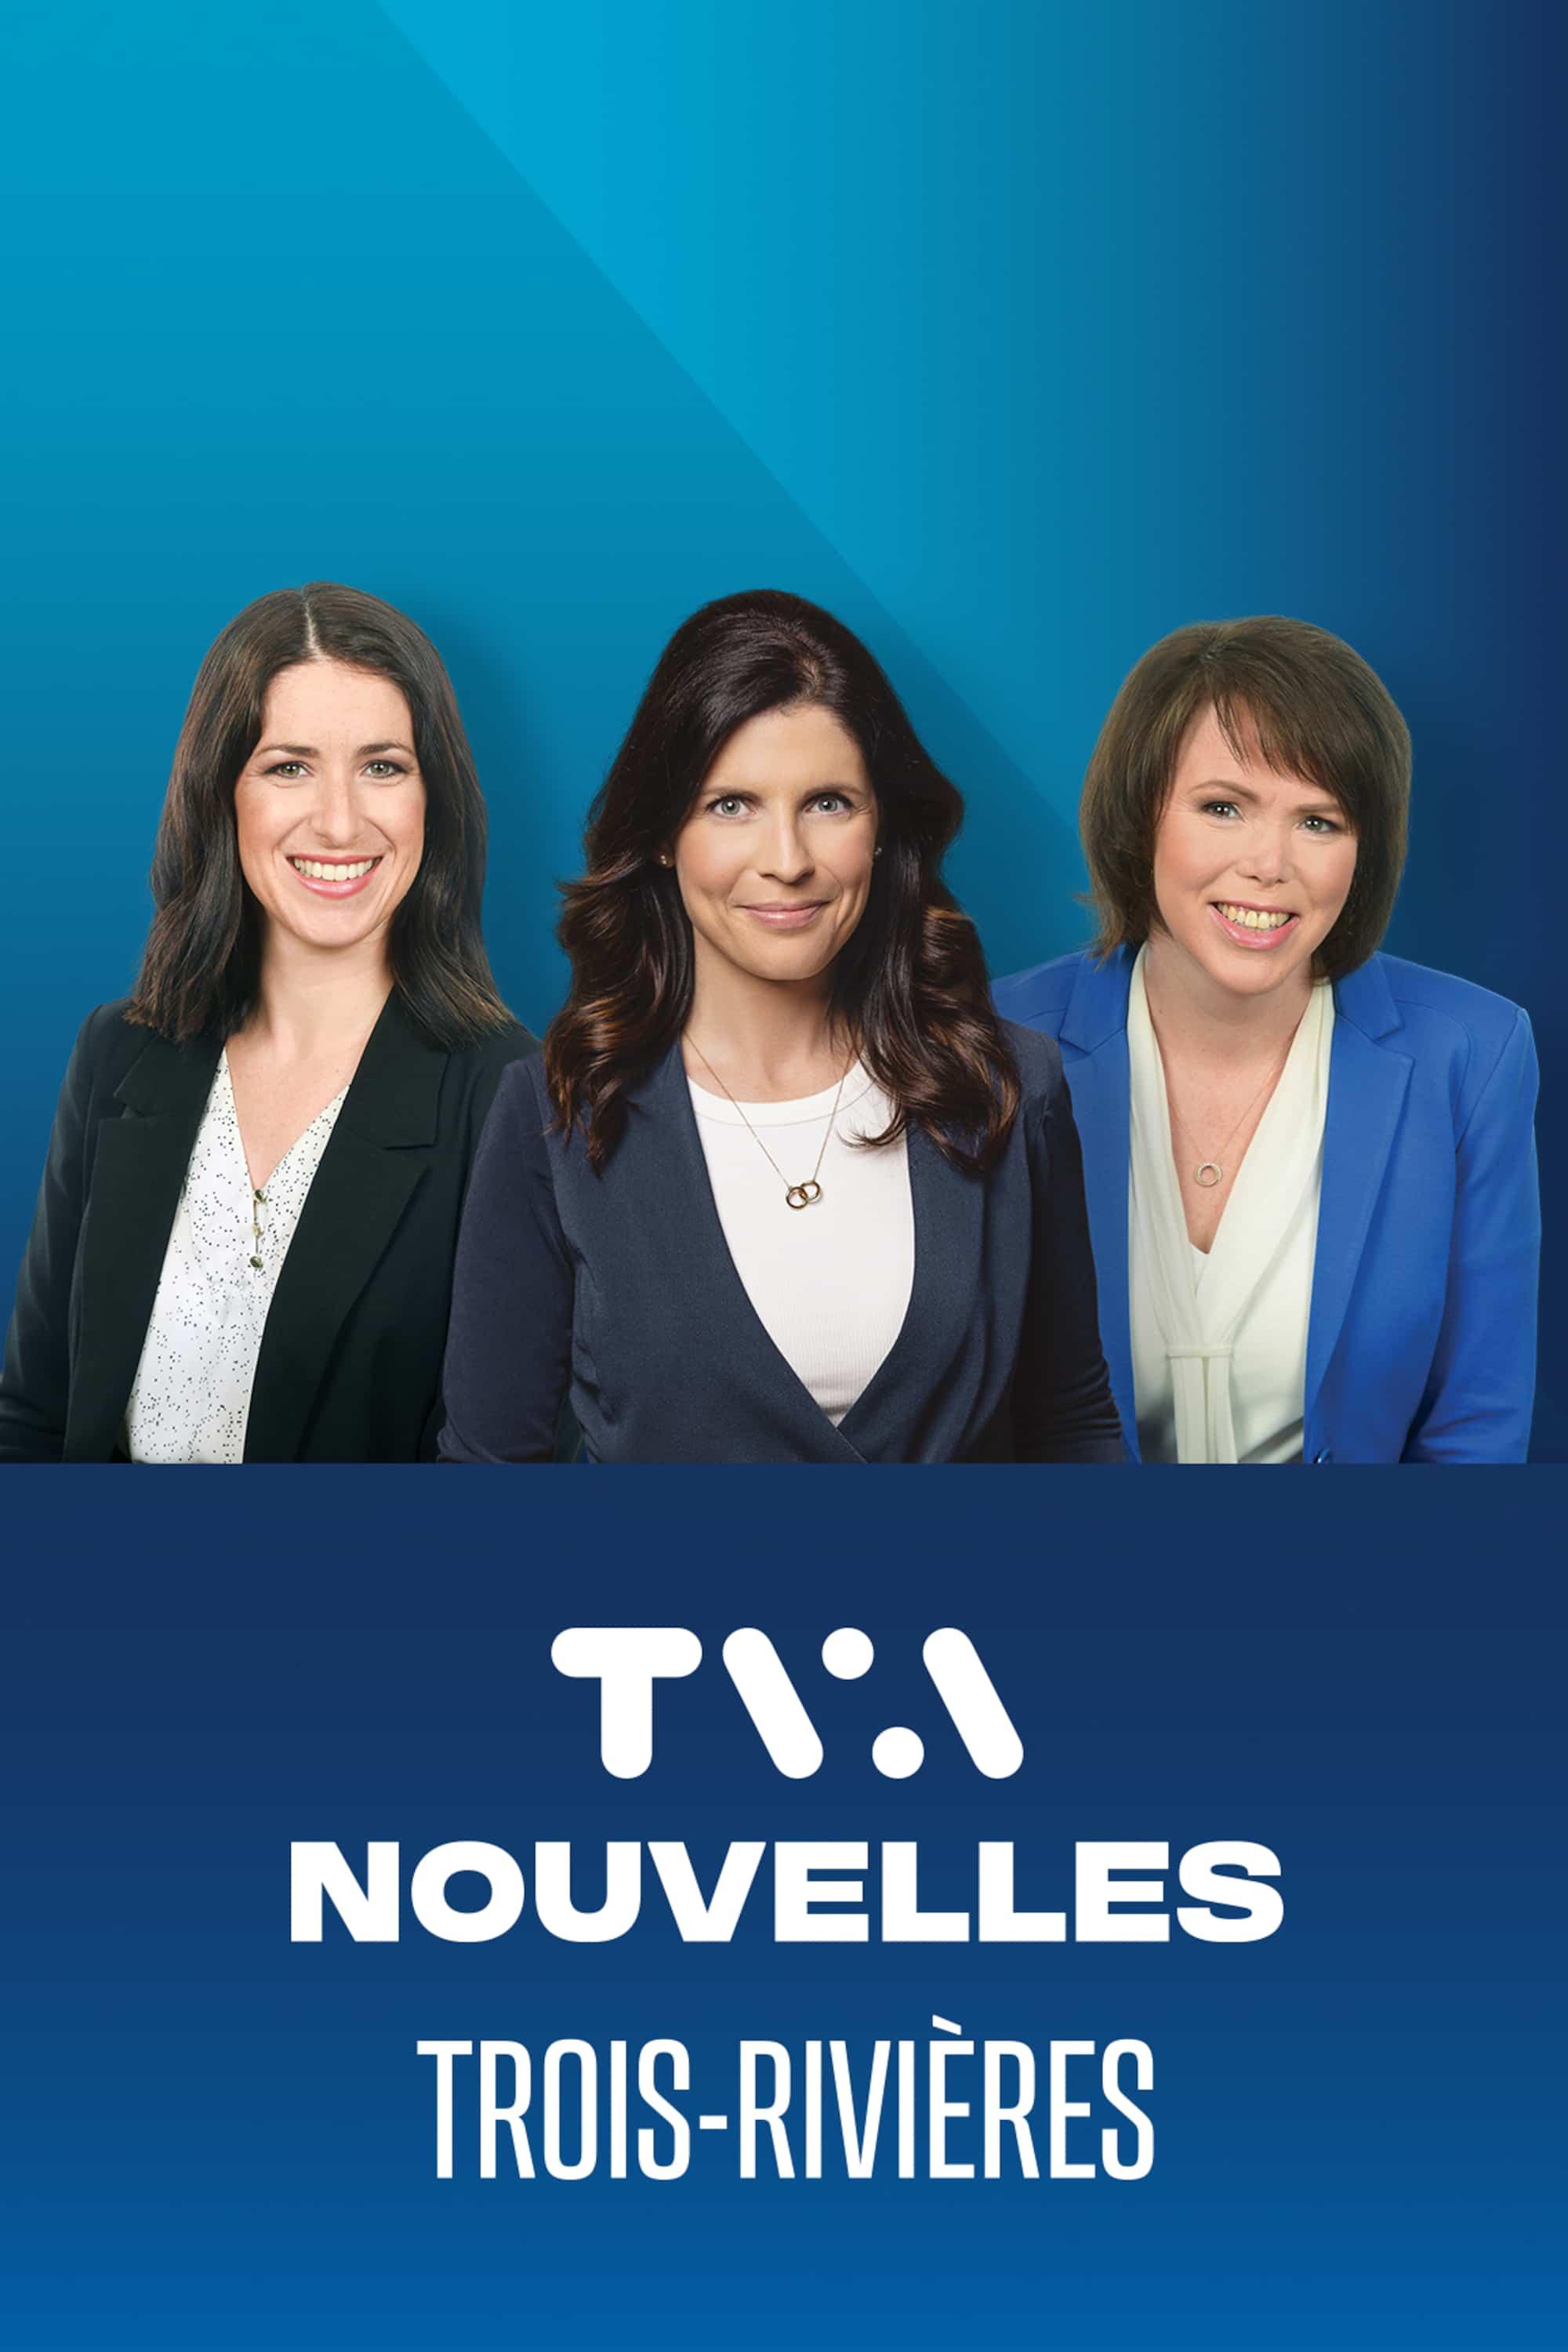 Le TVA Nouvelles Trois-Rivières